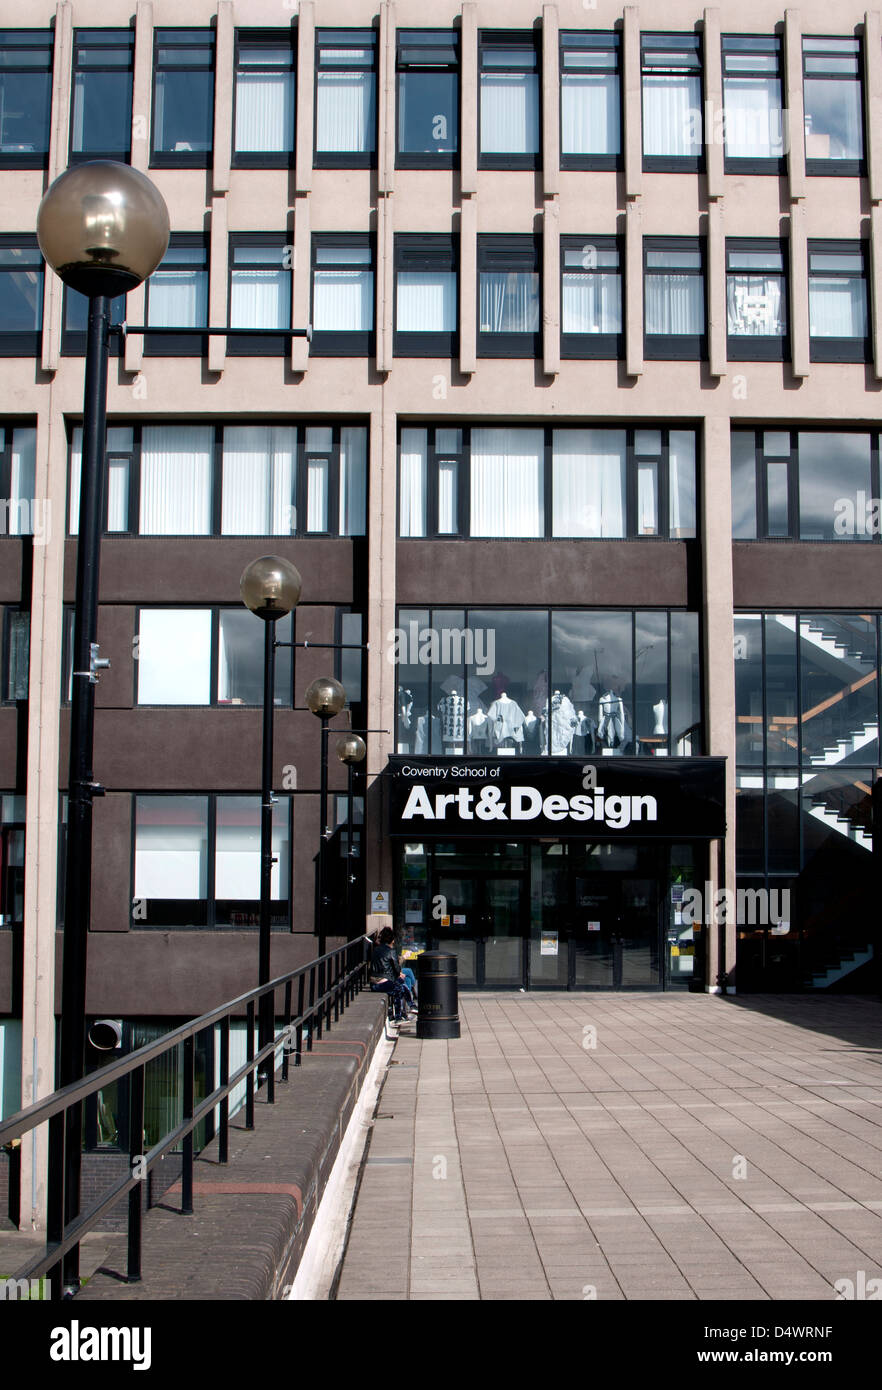 Coventry School of Art and Design, l'Université de Coventry, Royaume-Uni Banque D'Images